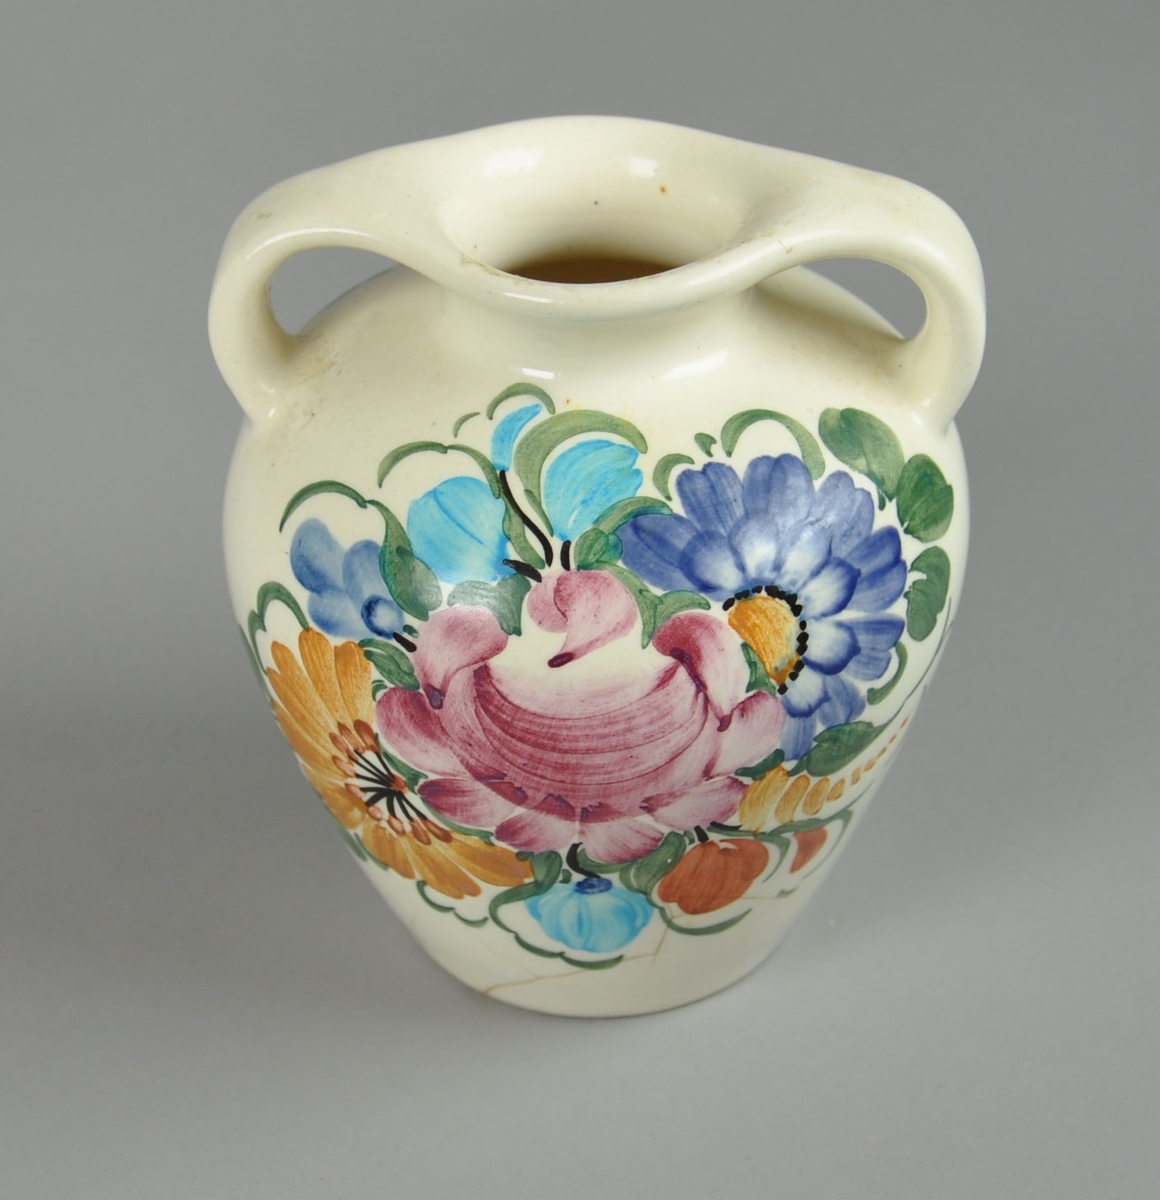 Vase av glassert keramikk, med to håndtak og dekormaling. Motiv på maling av blomsterkrans. Vasen har en utstående form. Vasen er noe oppsprukket ved bunnen.